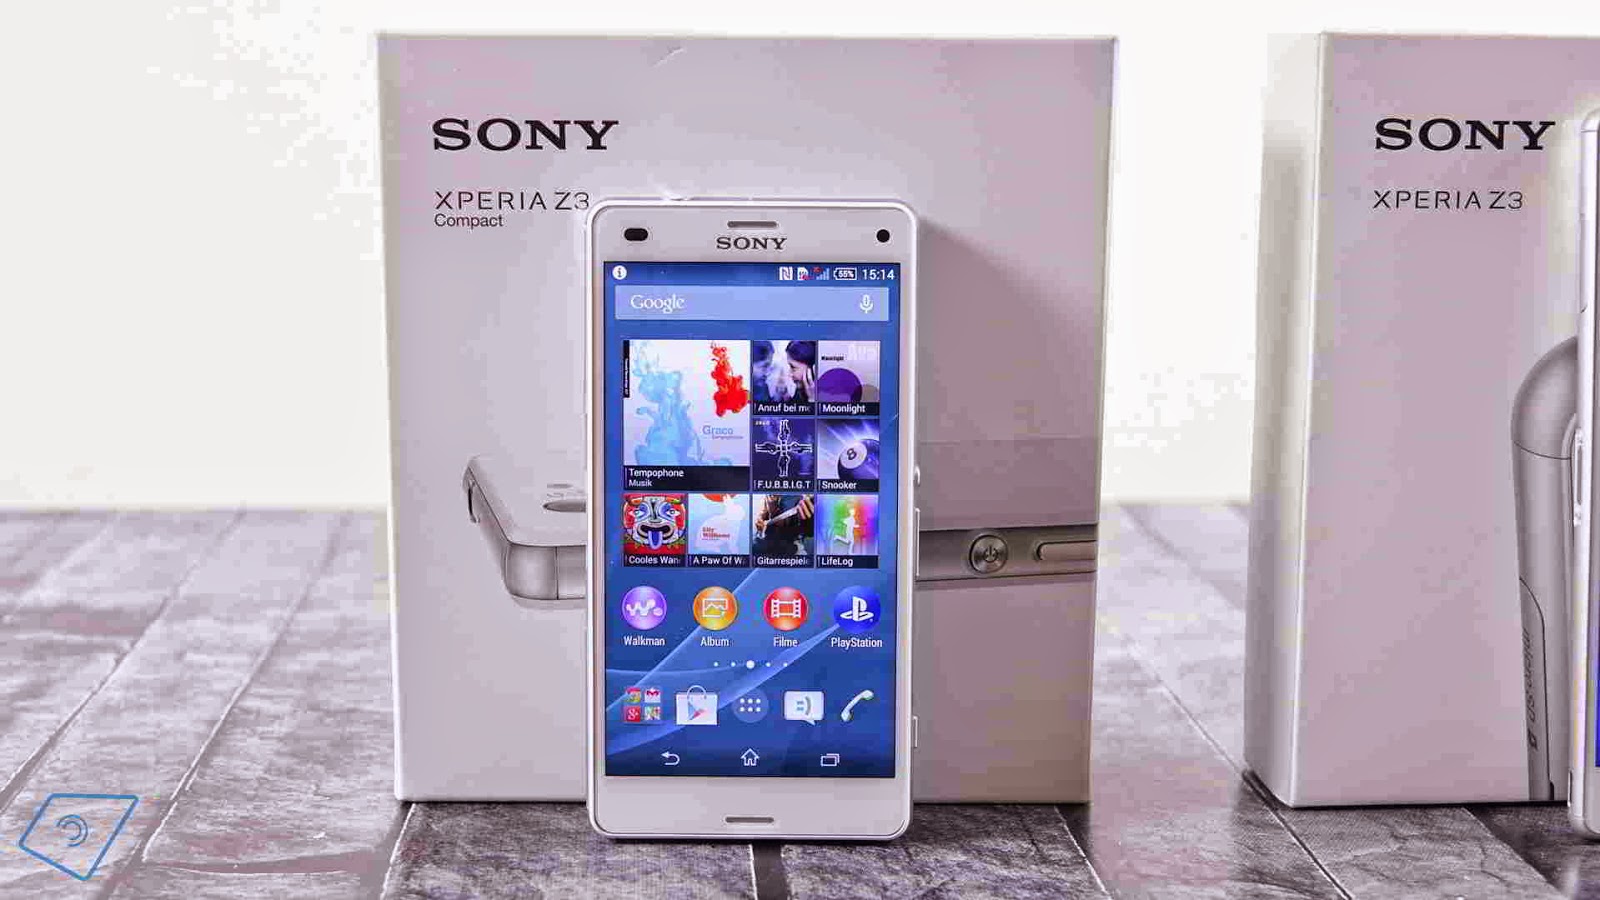 Spesifikasi dan Harga Sony Xperia Z3 serta kelebihan dibandingkan smartphone lain